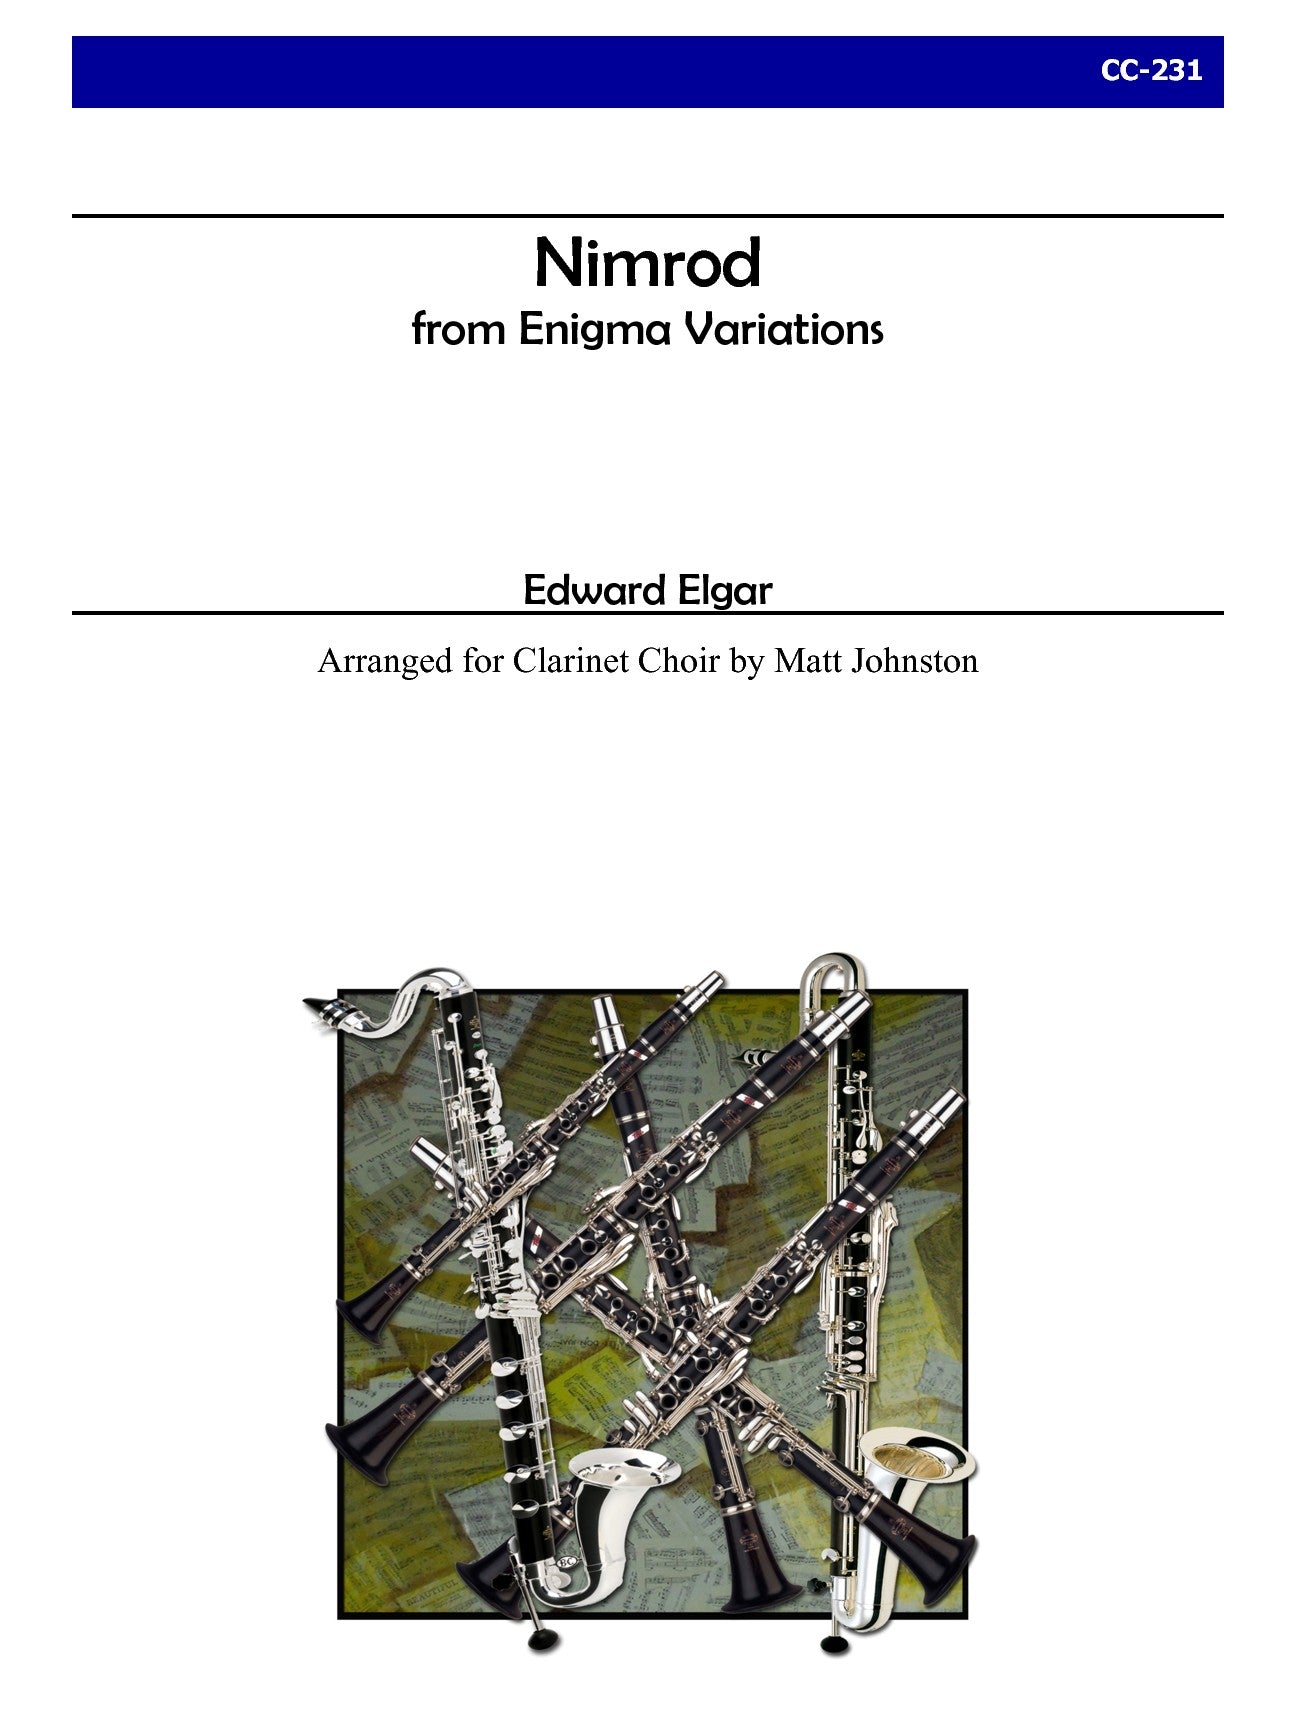 Elgar (arr. Matt Johnston) - Nimrod from Enigma Variations, Op. 36 for Clarinet Choir